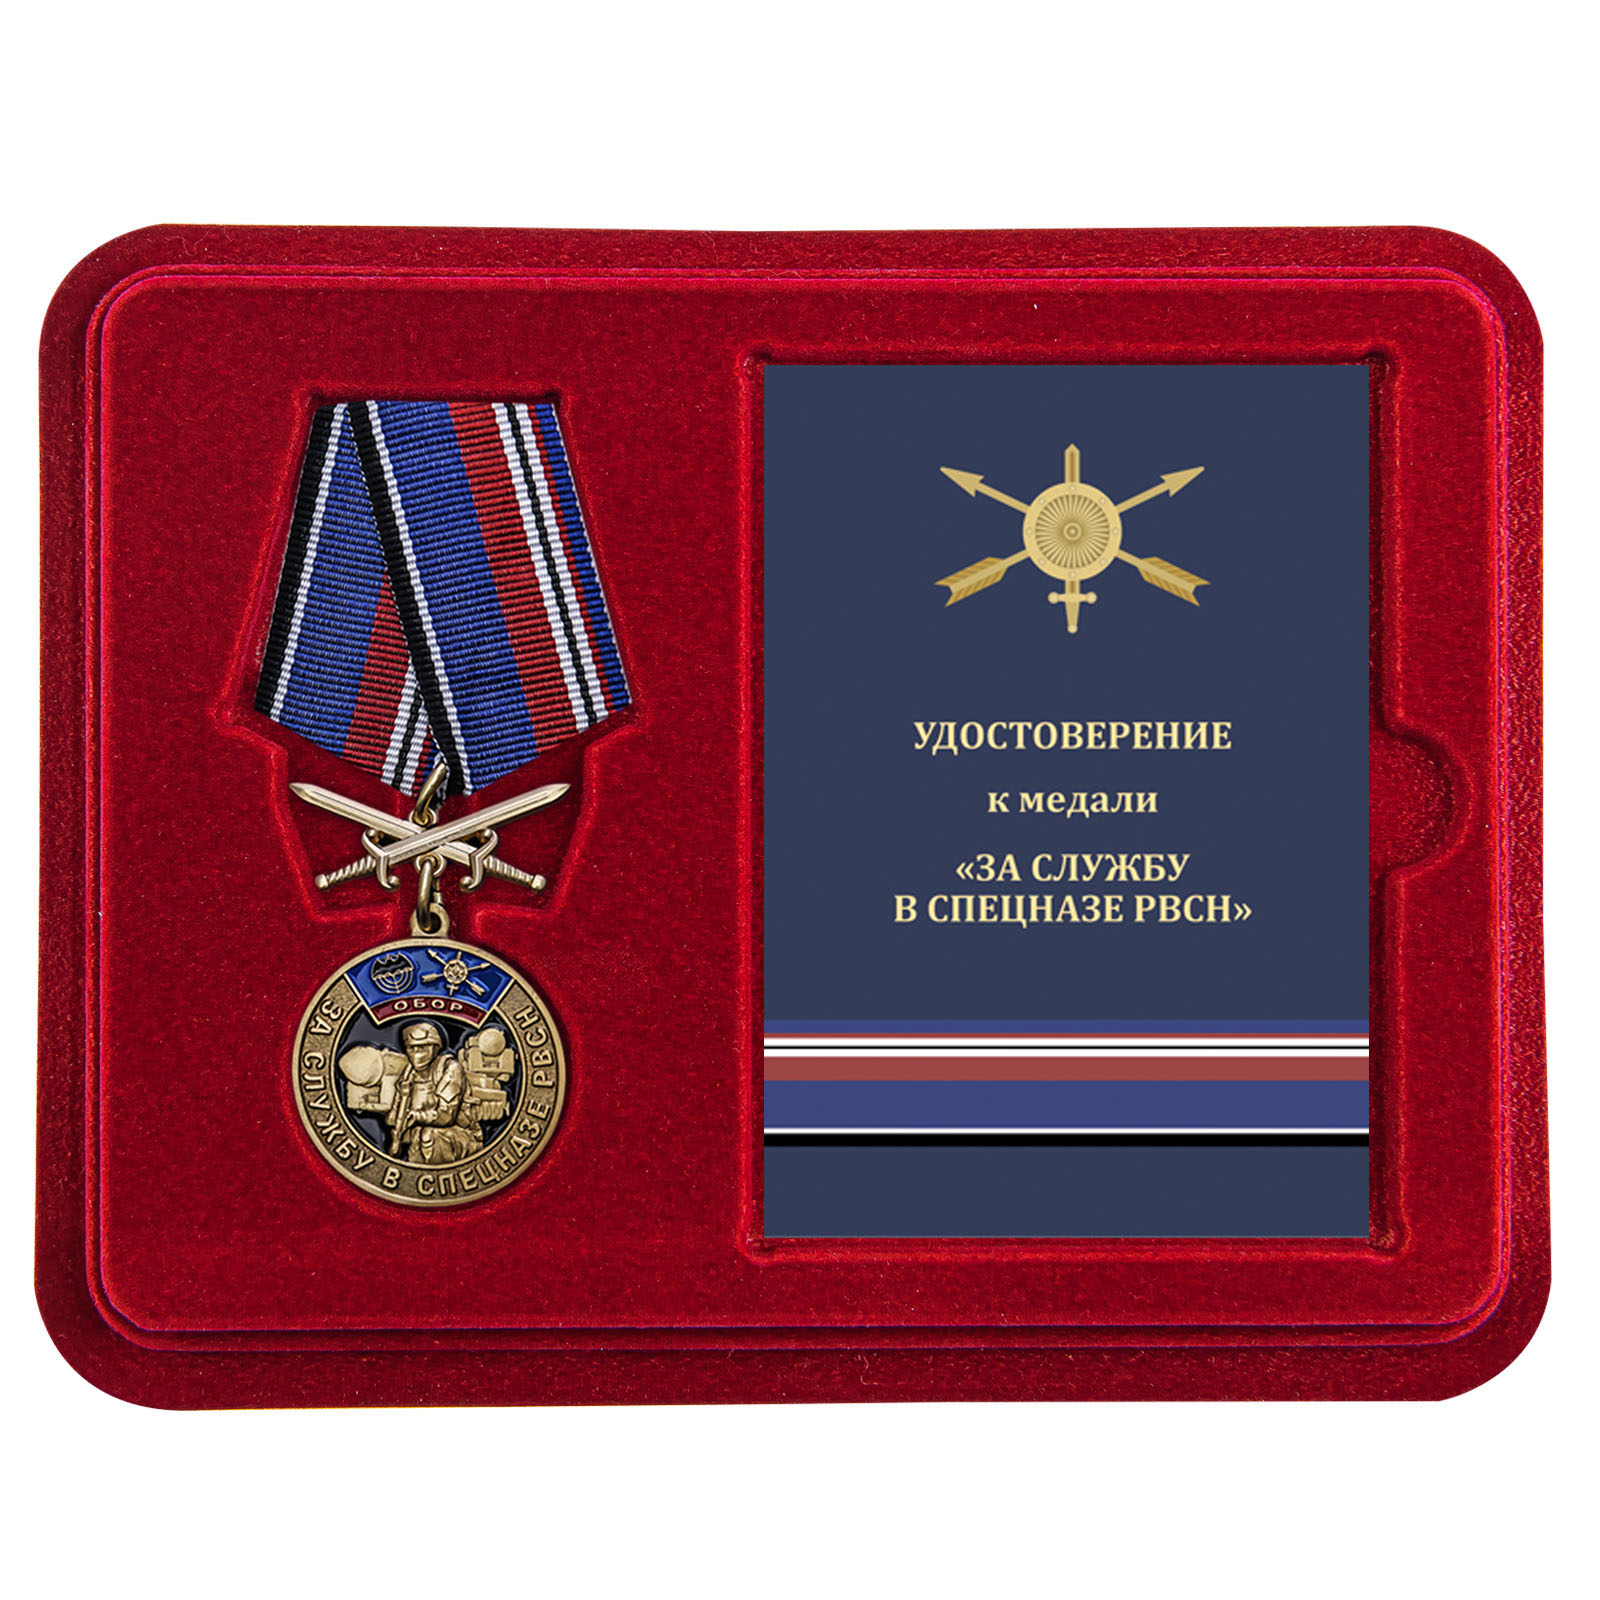 Купить медаль За службу в спецназе РВСН по специальной цене